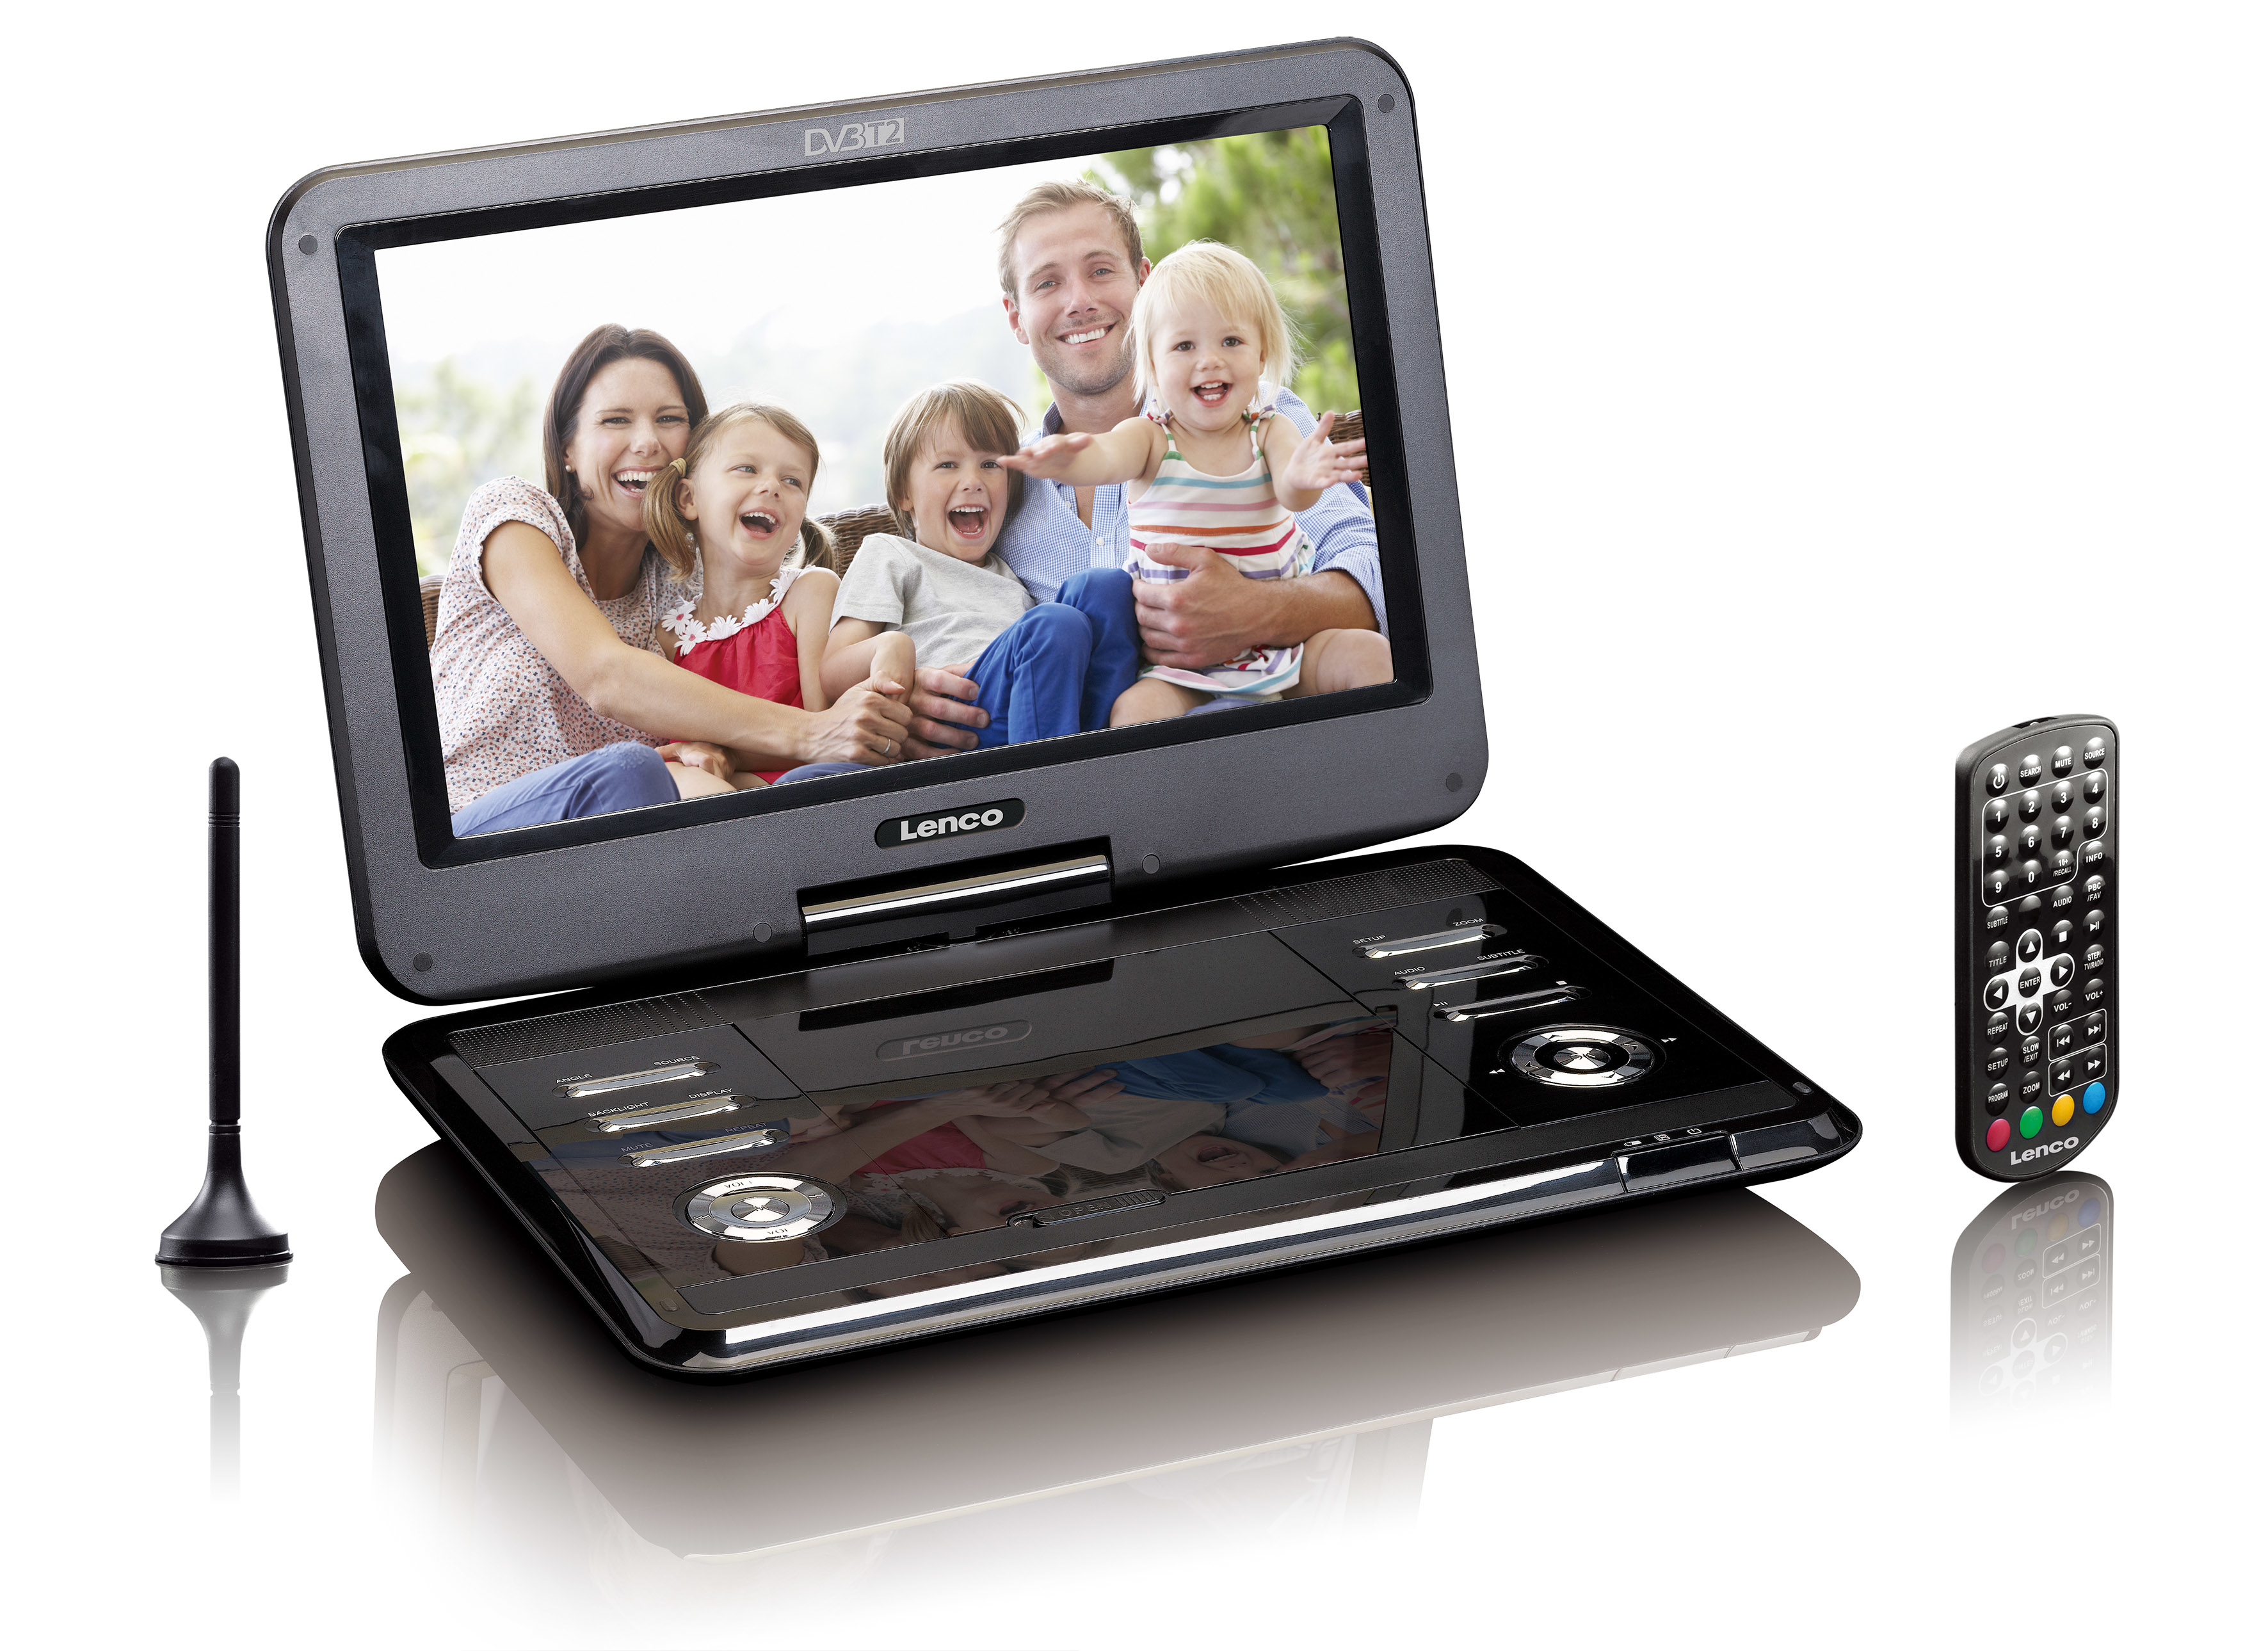 Lenco DVP-1273 lettore DVD portatile Lettore Convertibile Nero 29,5 cm (11.6